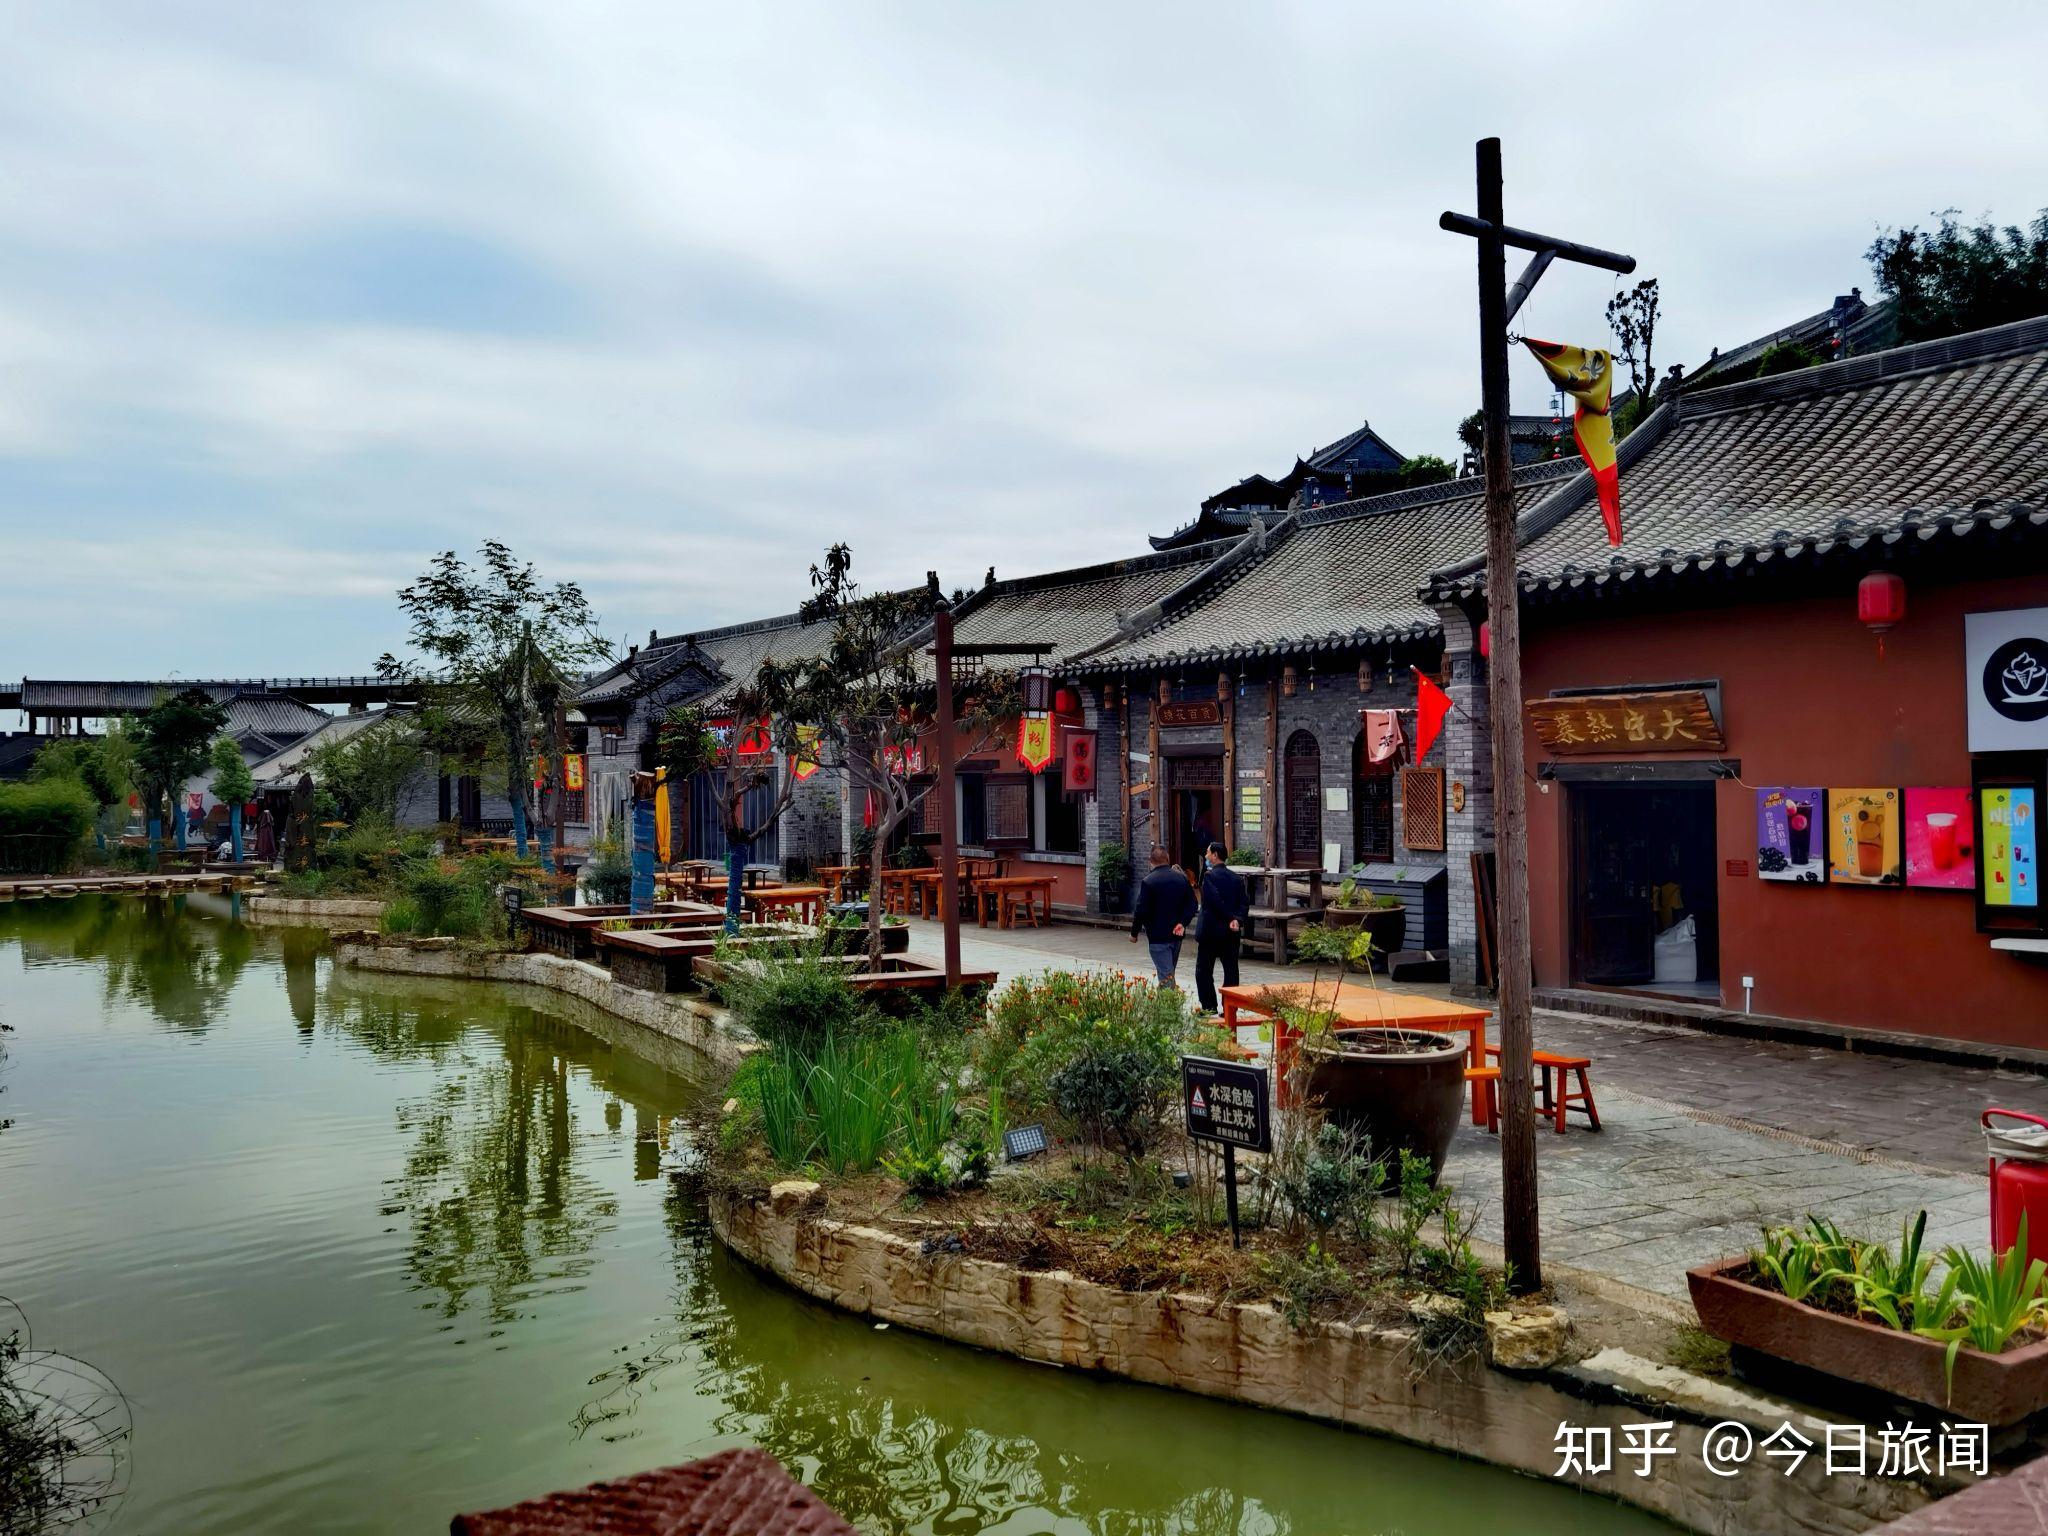 河南洛阳龙凤山古镇,是一个适合节假日游玩的地方,离市区不是很远,有